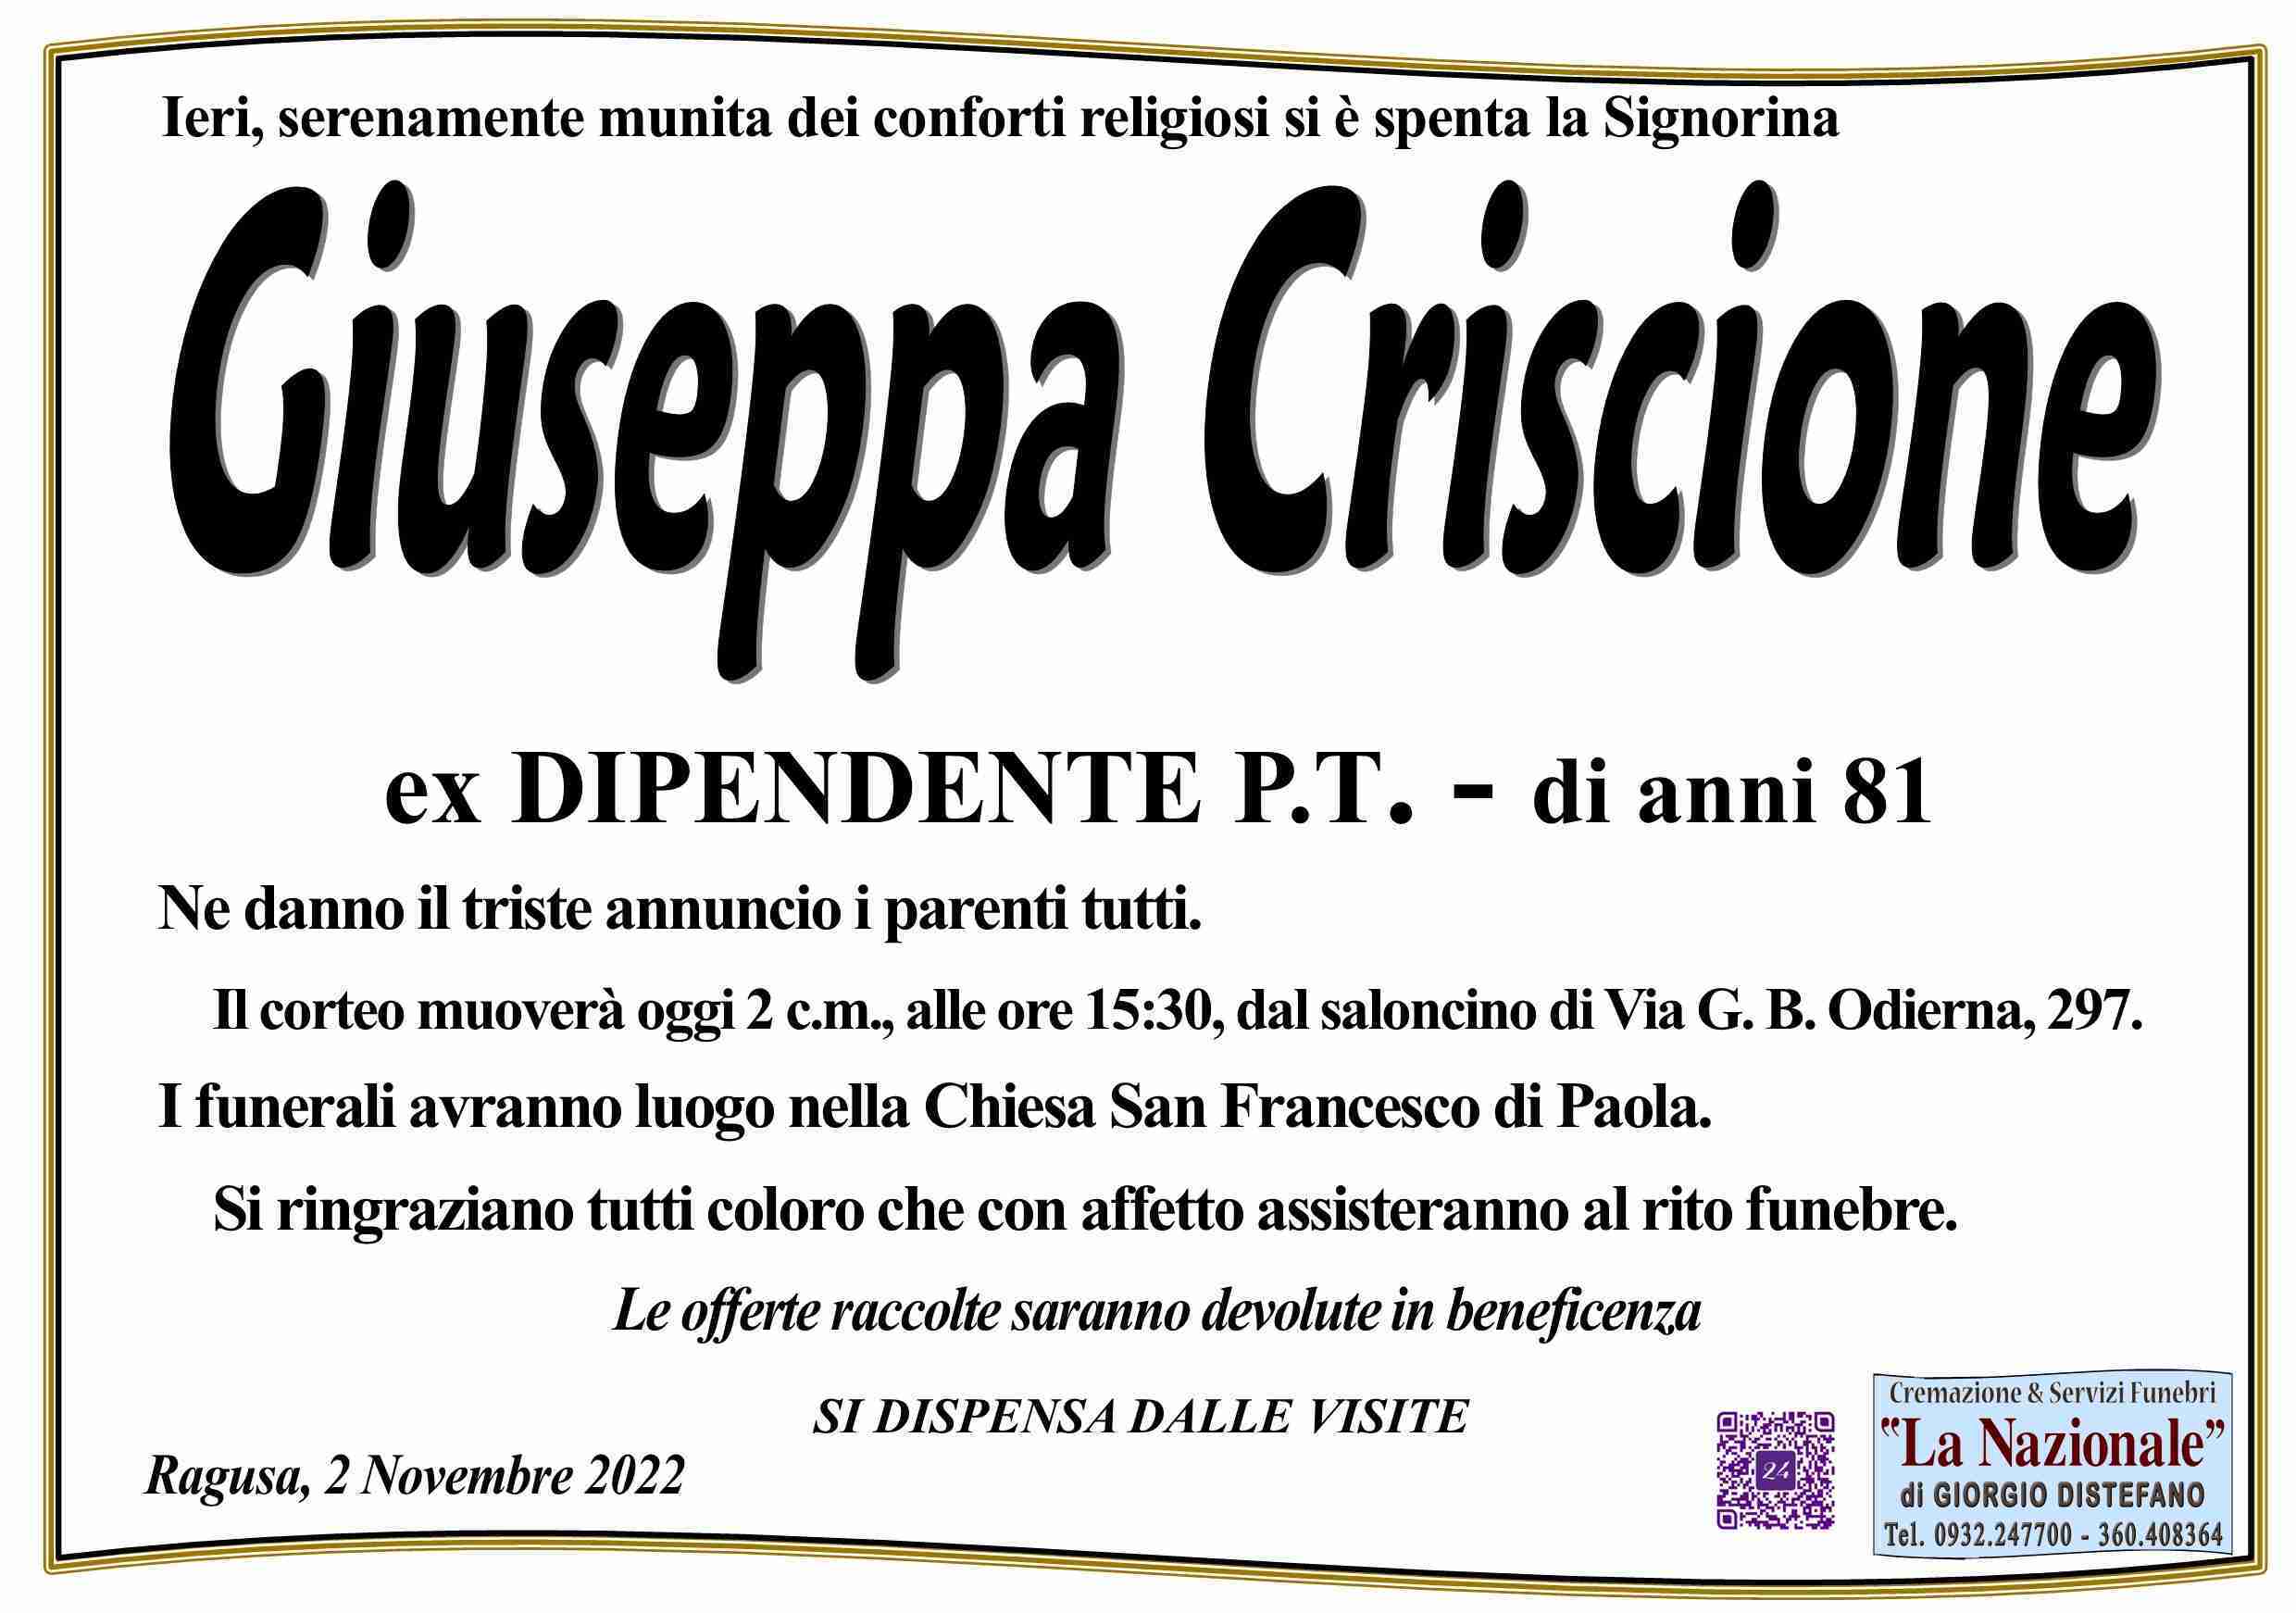 Giuseppa Criscione